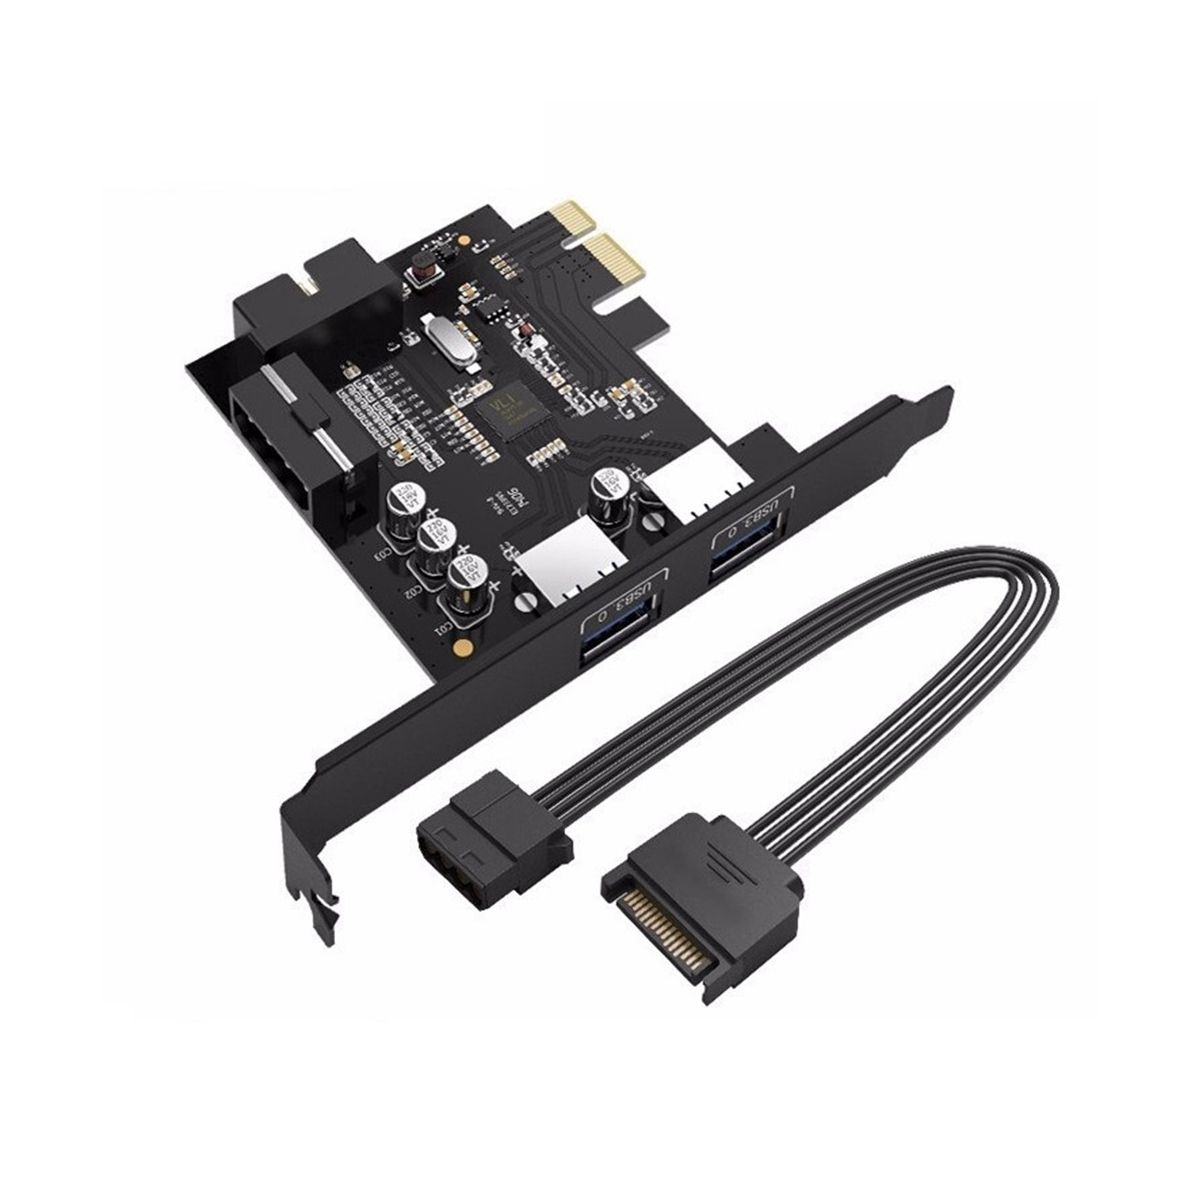 ORICO USB 3.0 PCI-E. Плата расширения USB 3.0 PCI-E. Плата расширения ORICO pvu3-2o2i. PCI-E плата расширения USB 2,0. Расширение usb 3.0 pci